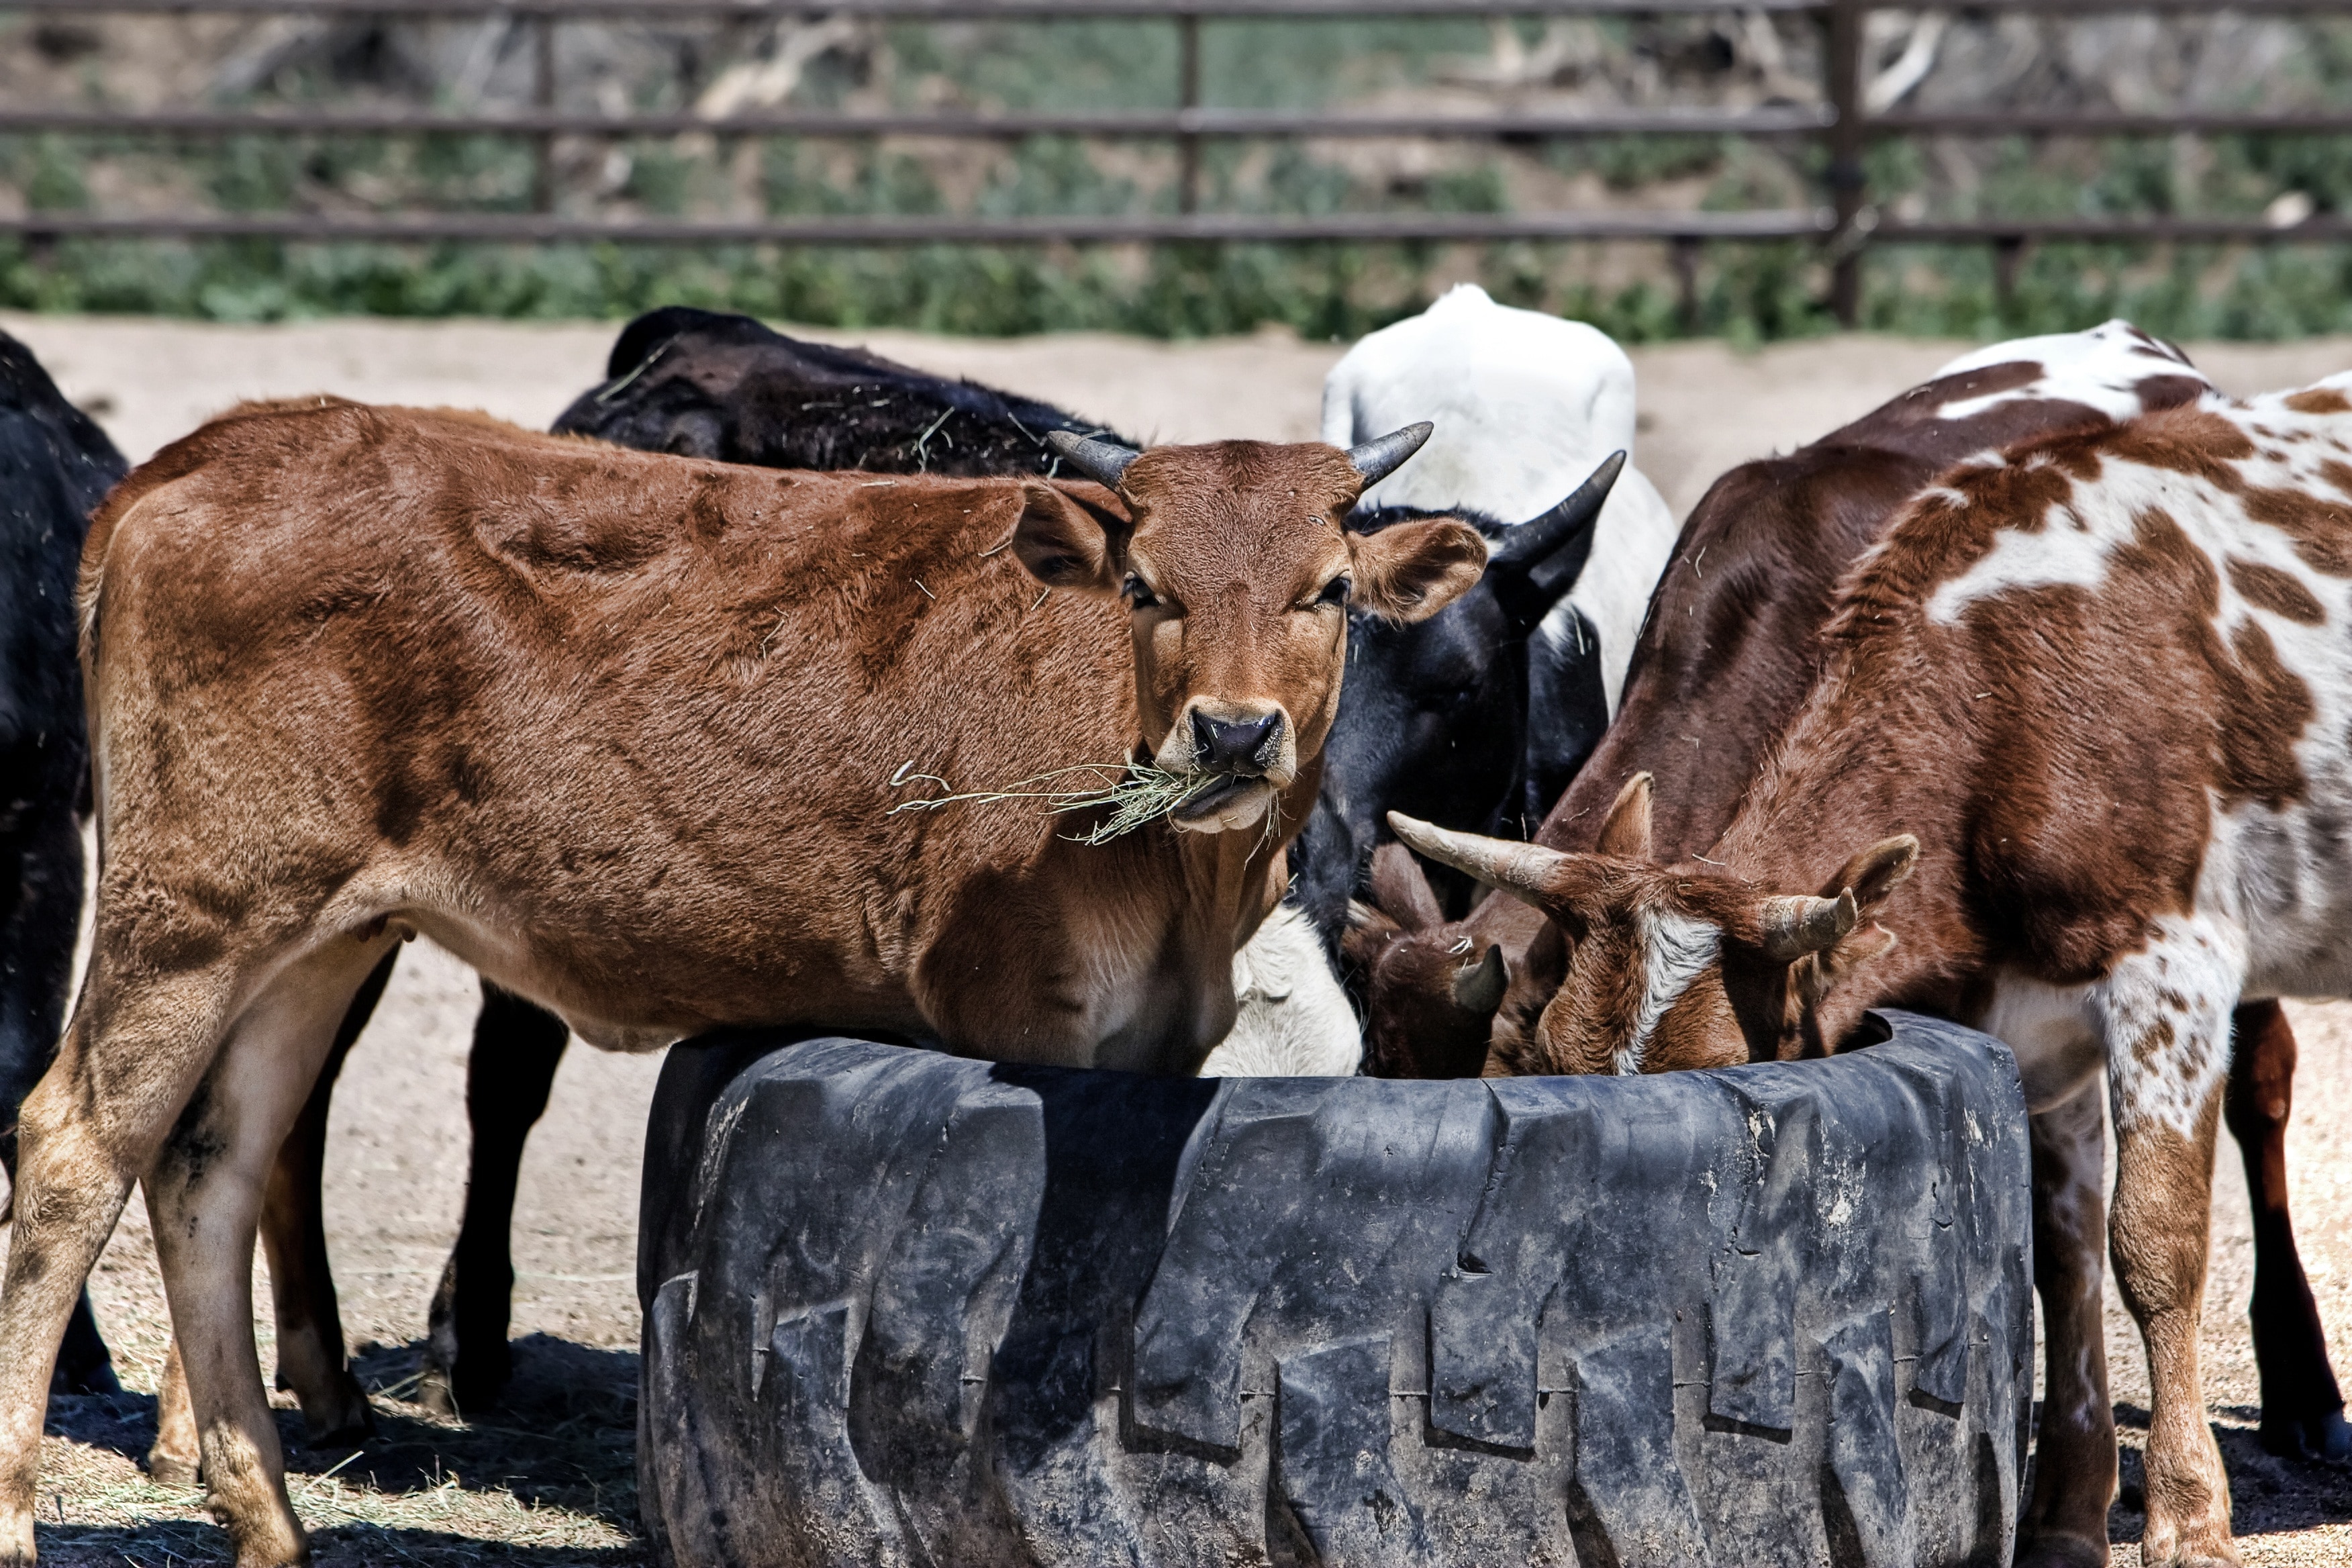 cows near black auto tire